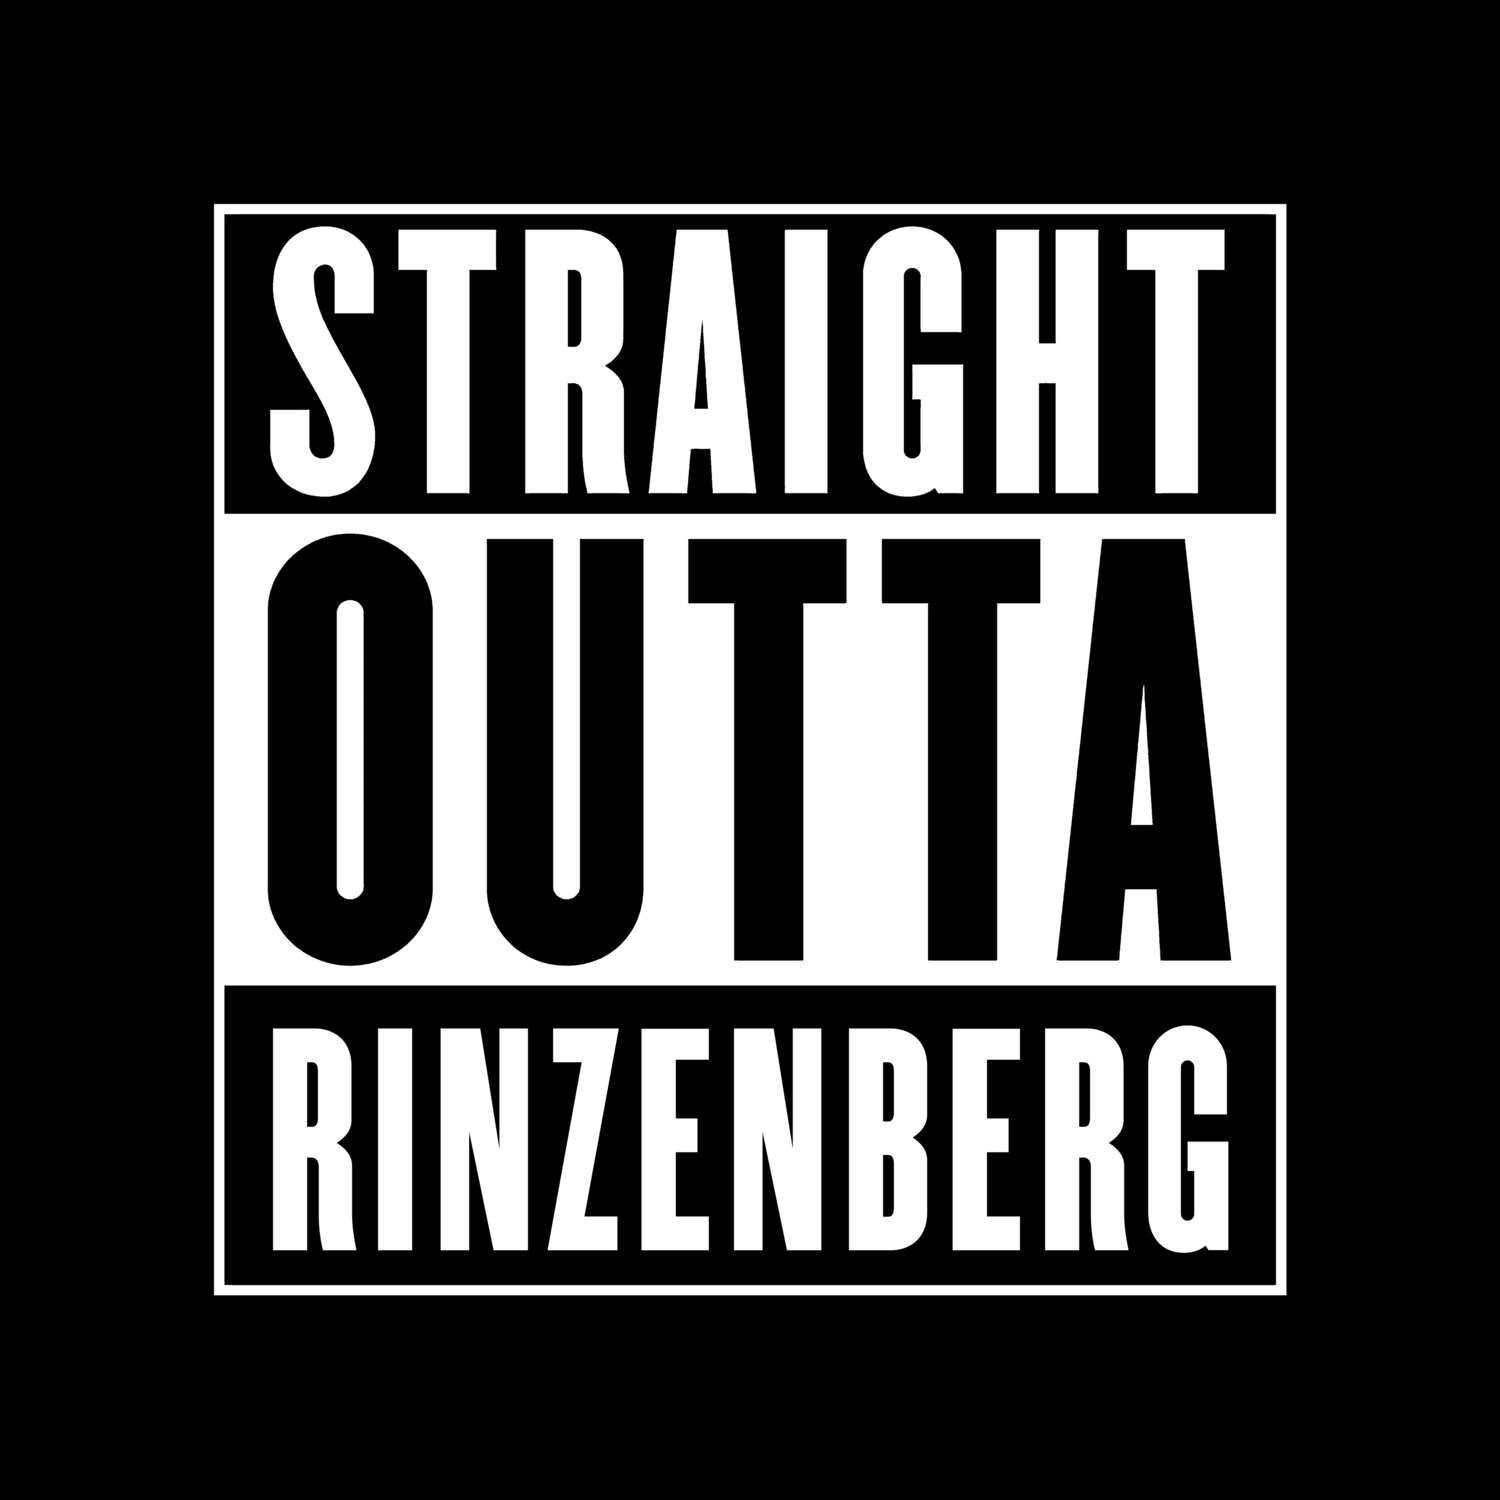 Rinzenberg T-Shirt »Straight Outta«